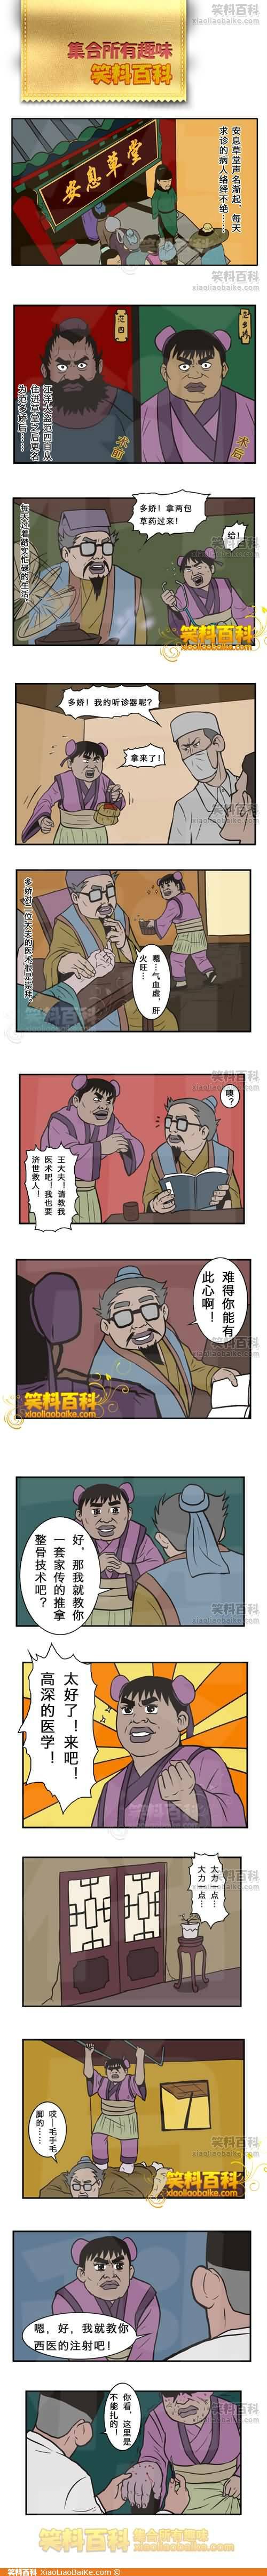 邪恶漫画爆笑囧图第269刊：新睡美人的故事